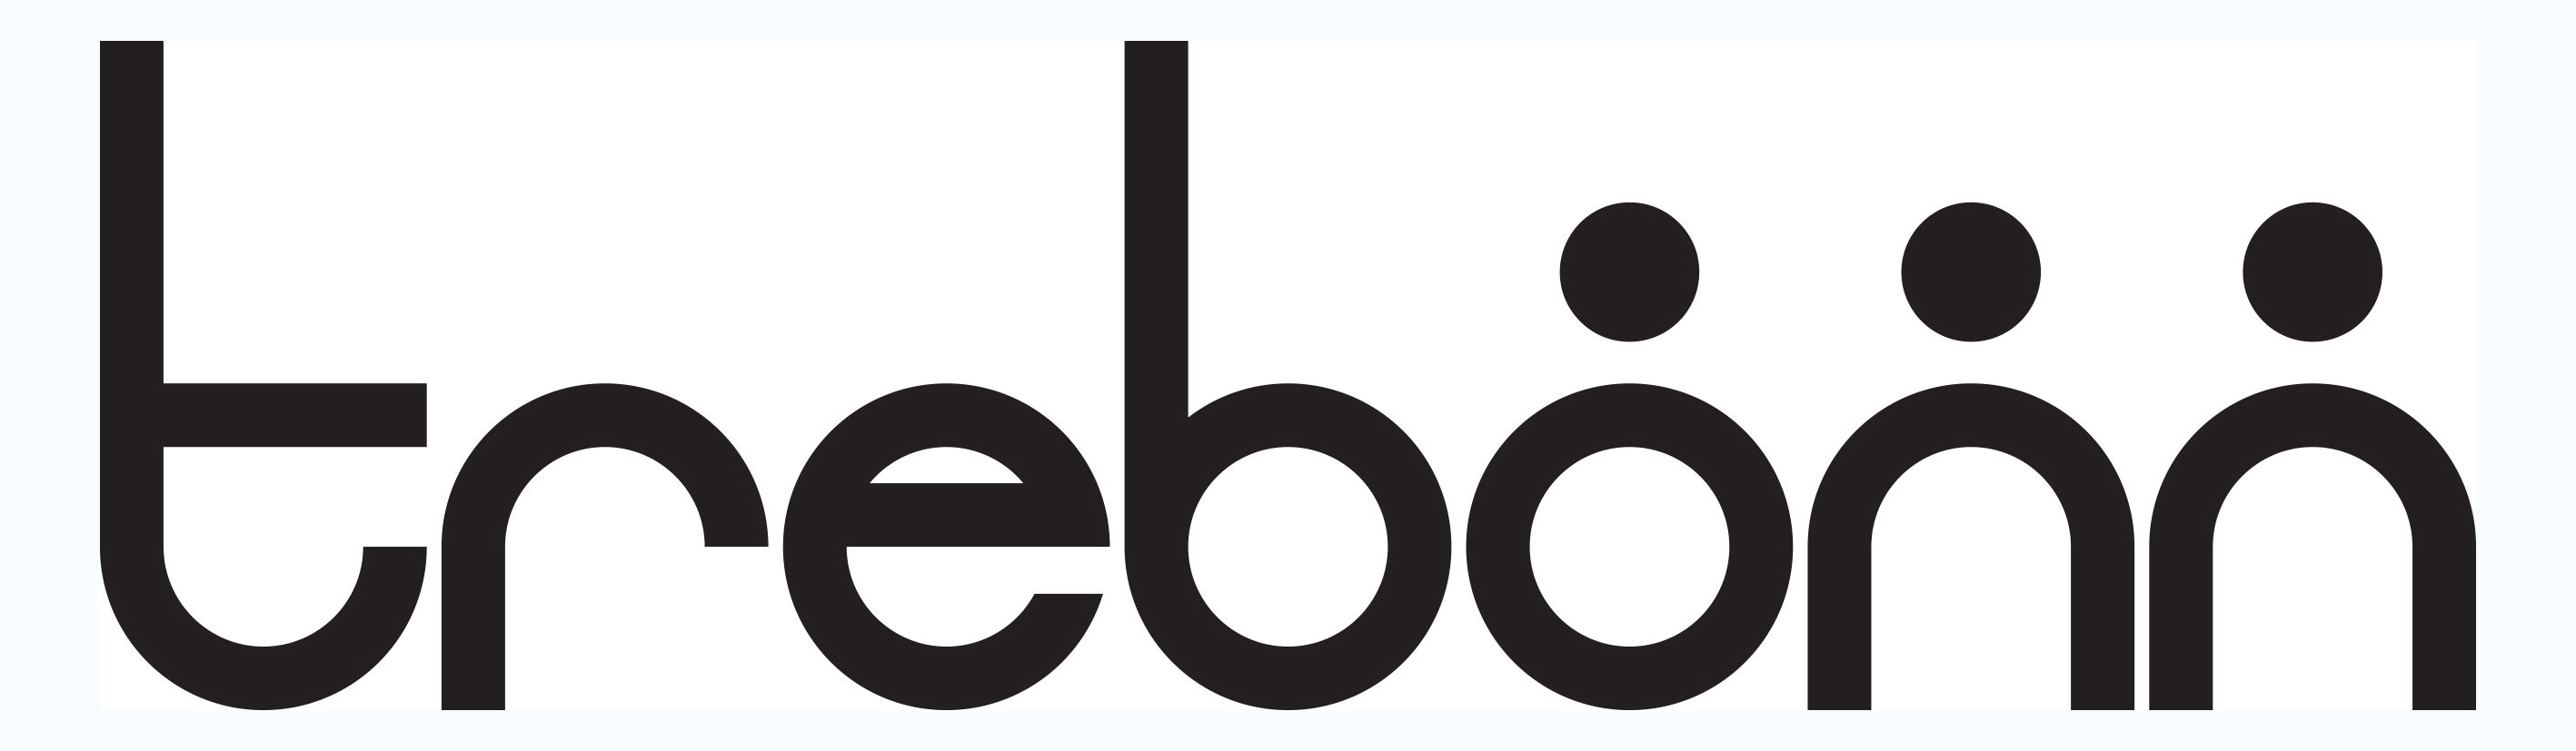 Logo Trebonn